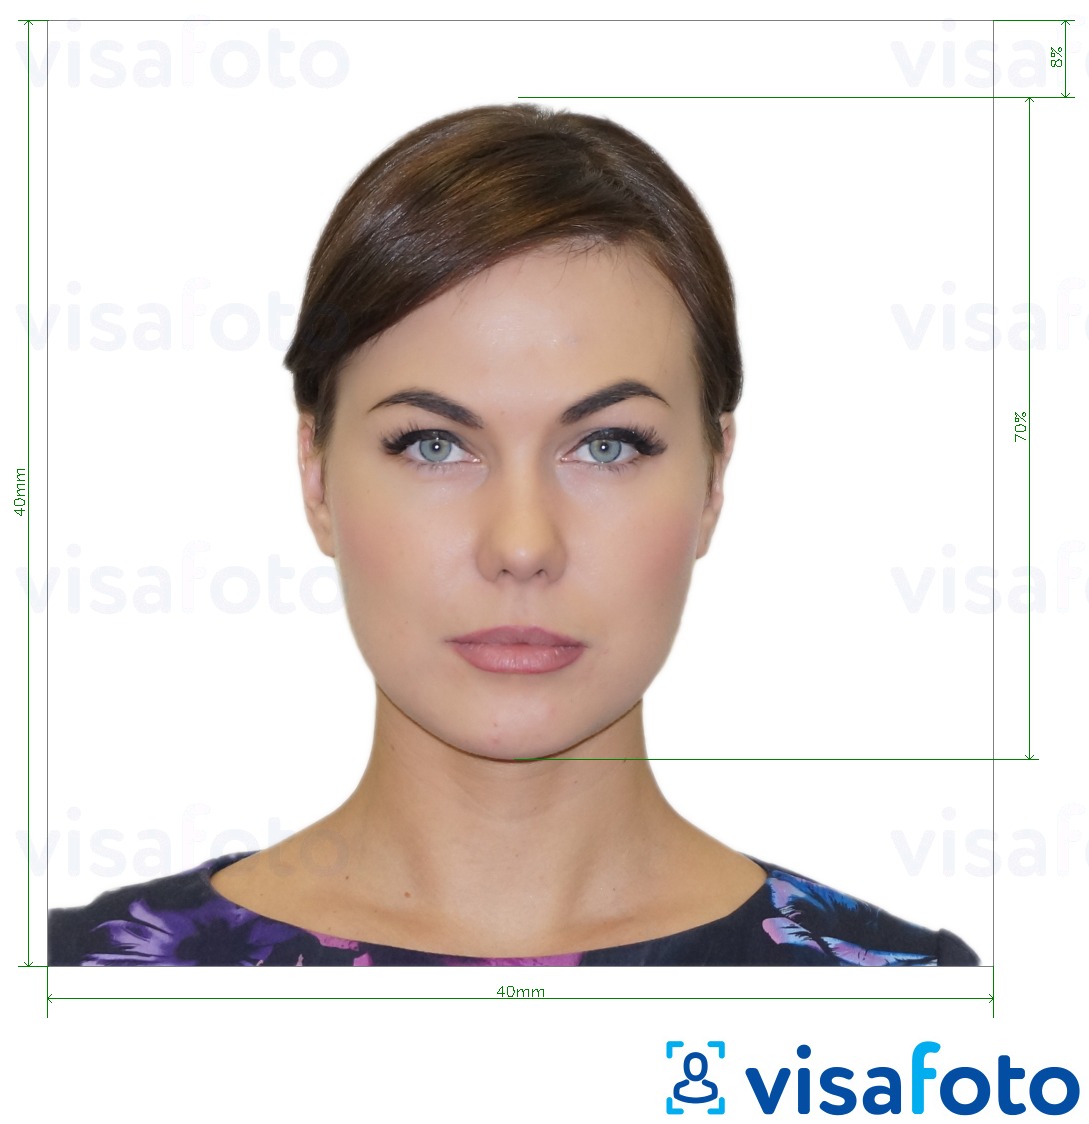 דוגמא לתמונה על ארגנטינה visa 4x4 cm (40x40 mm) בעלת מידות מדויקות